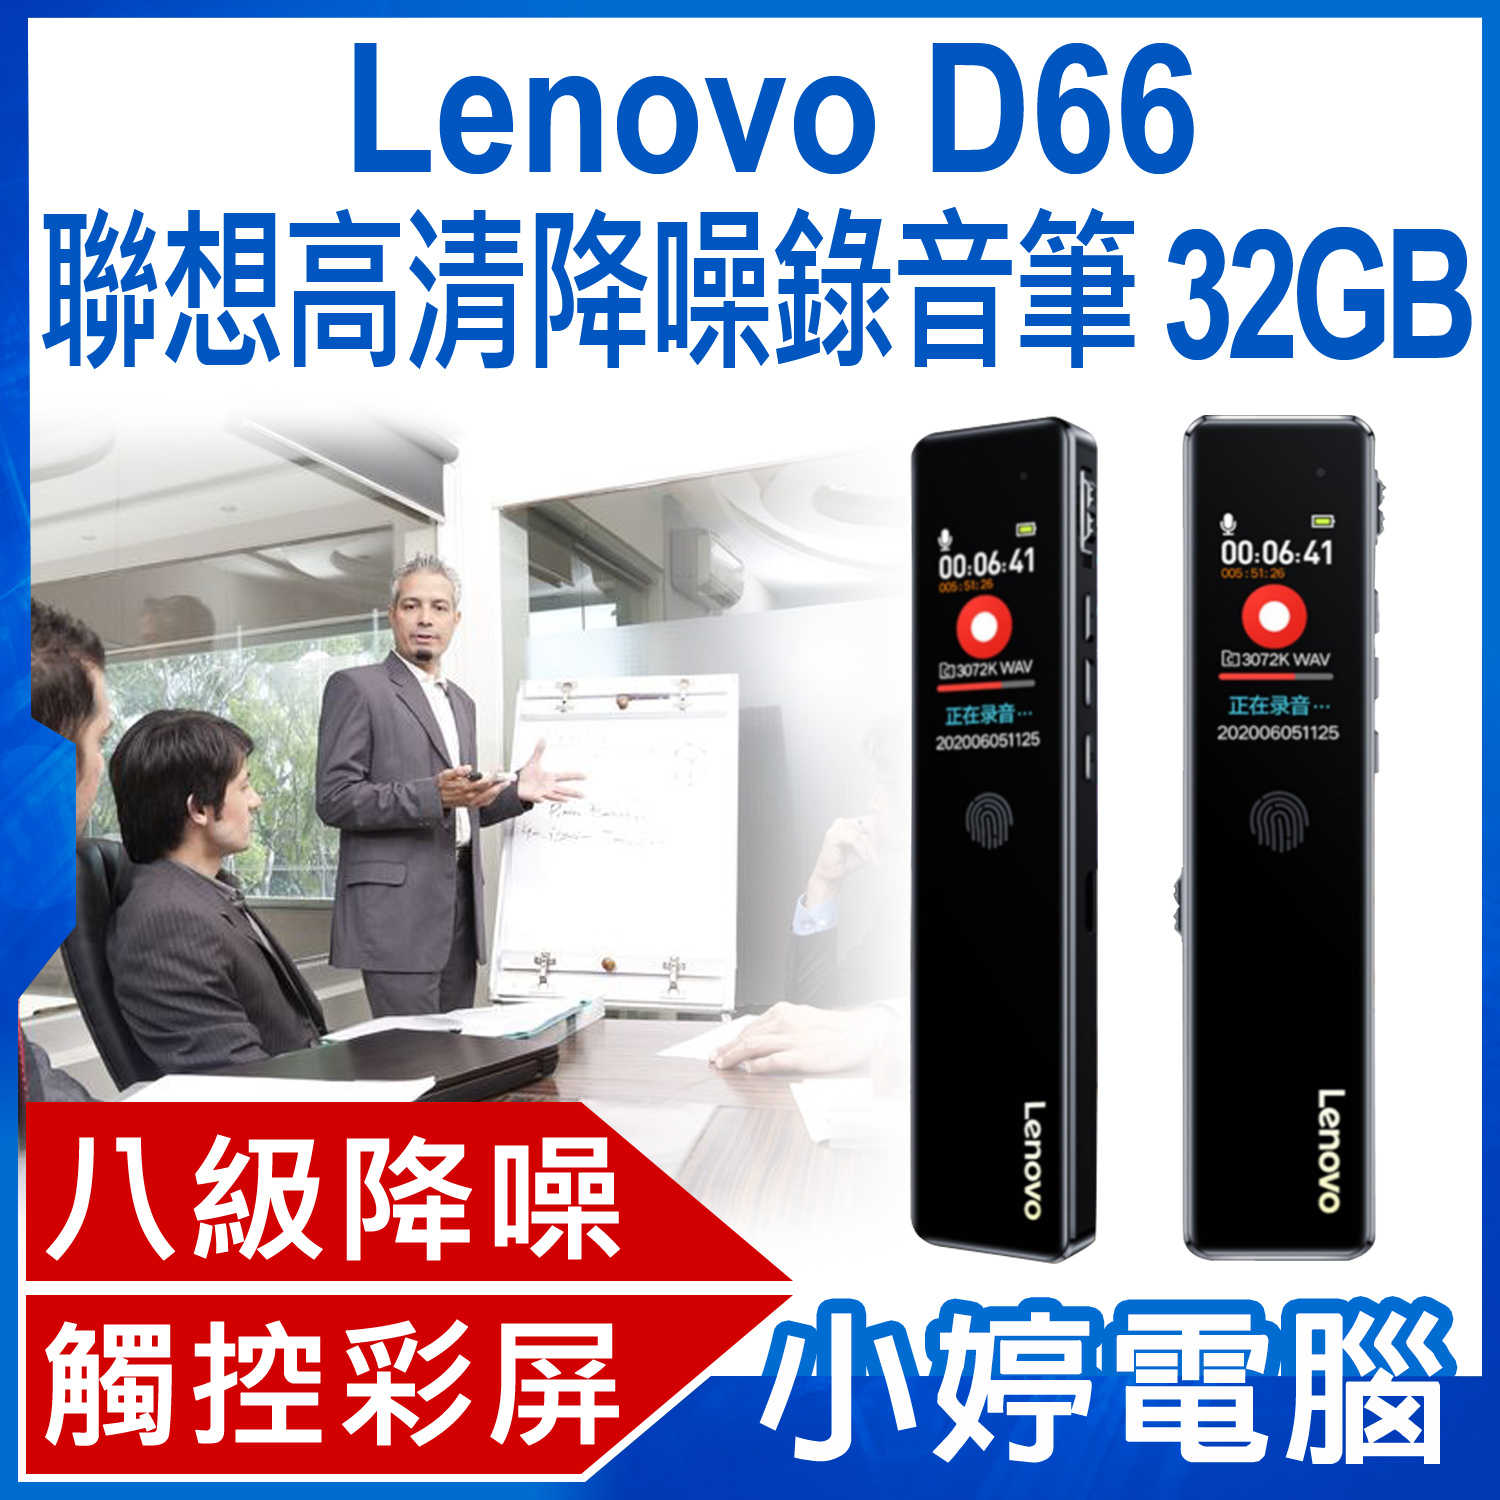 【小婷電腦】Lenovo D66 聯想高清降噪錄音筆 32GB 八級降噪 高清音質 定時錄音 觸控操作